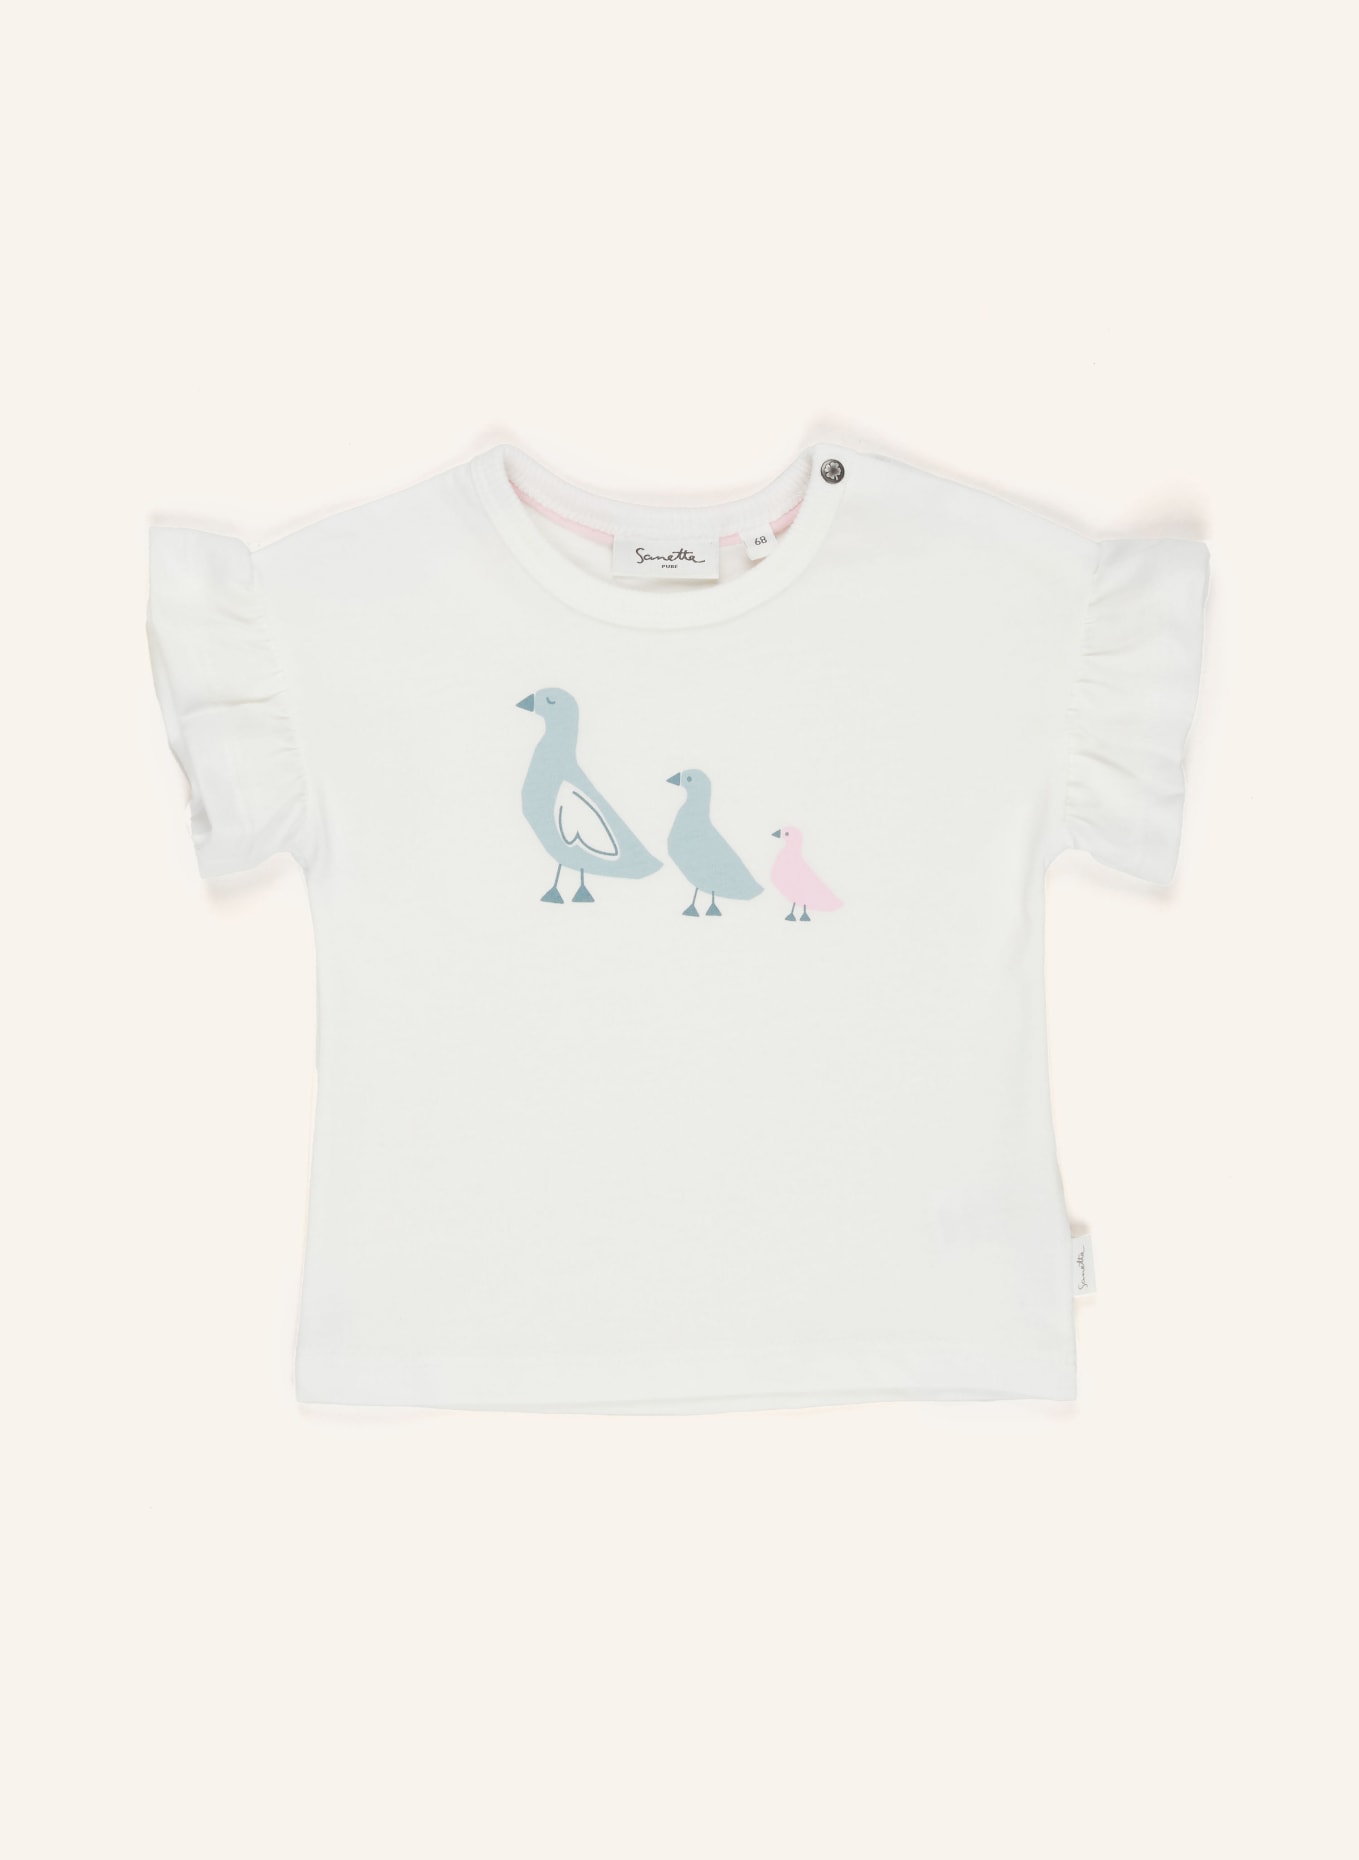 Sanetta PURE T-Shirt VOGEL FAMILIE, Farbe: WEISS/ ROSA/ BLAUGRAU (Bild 1)